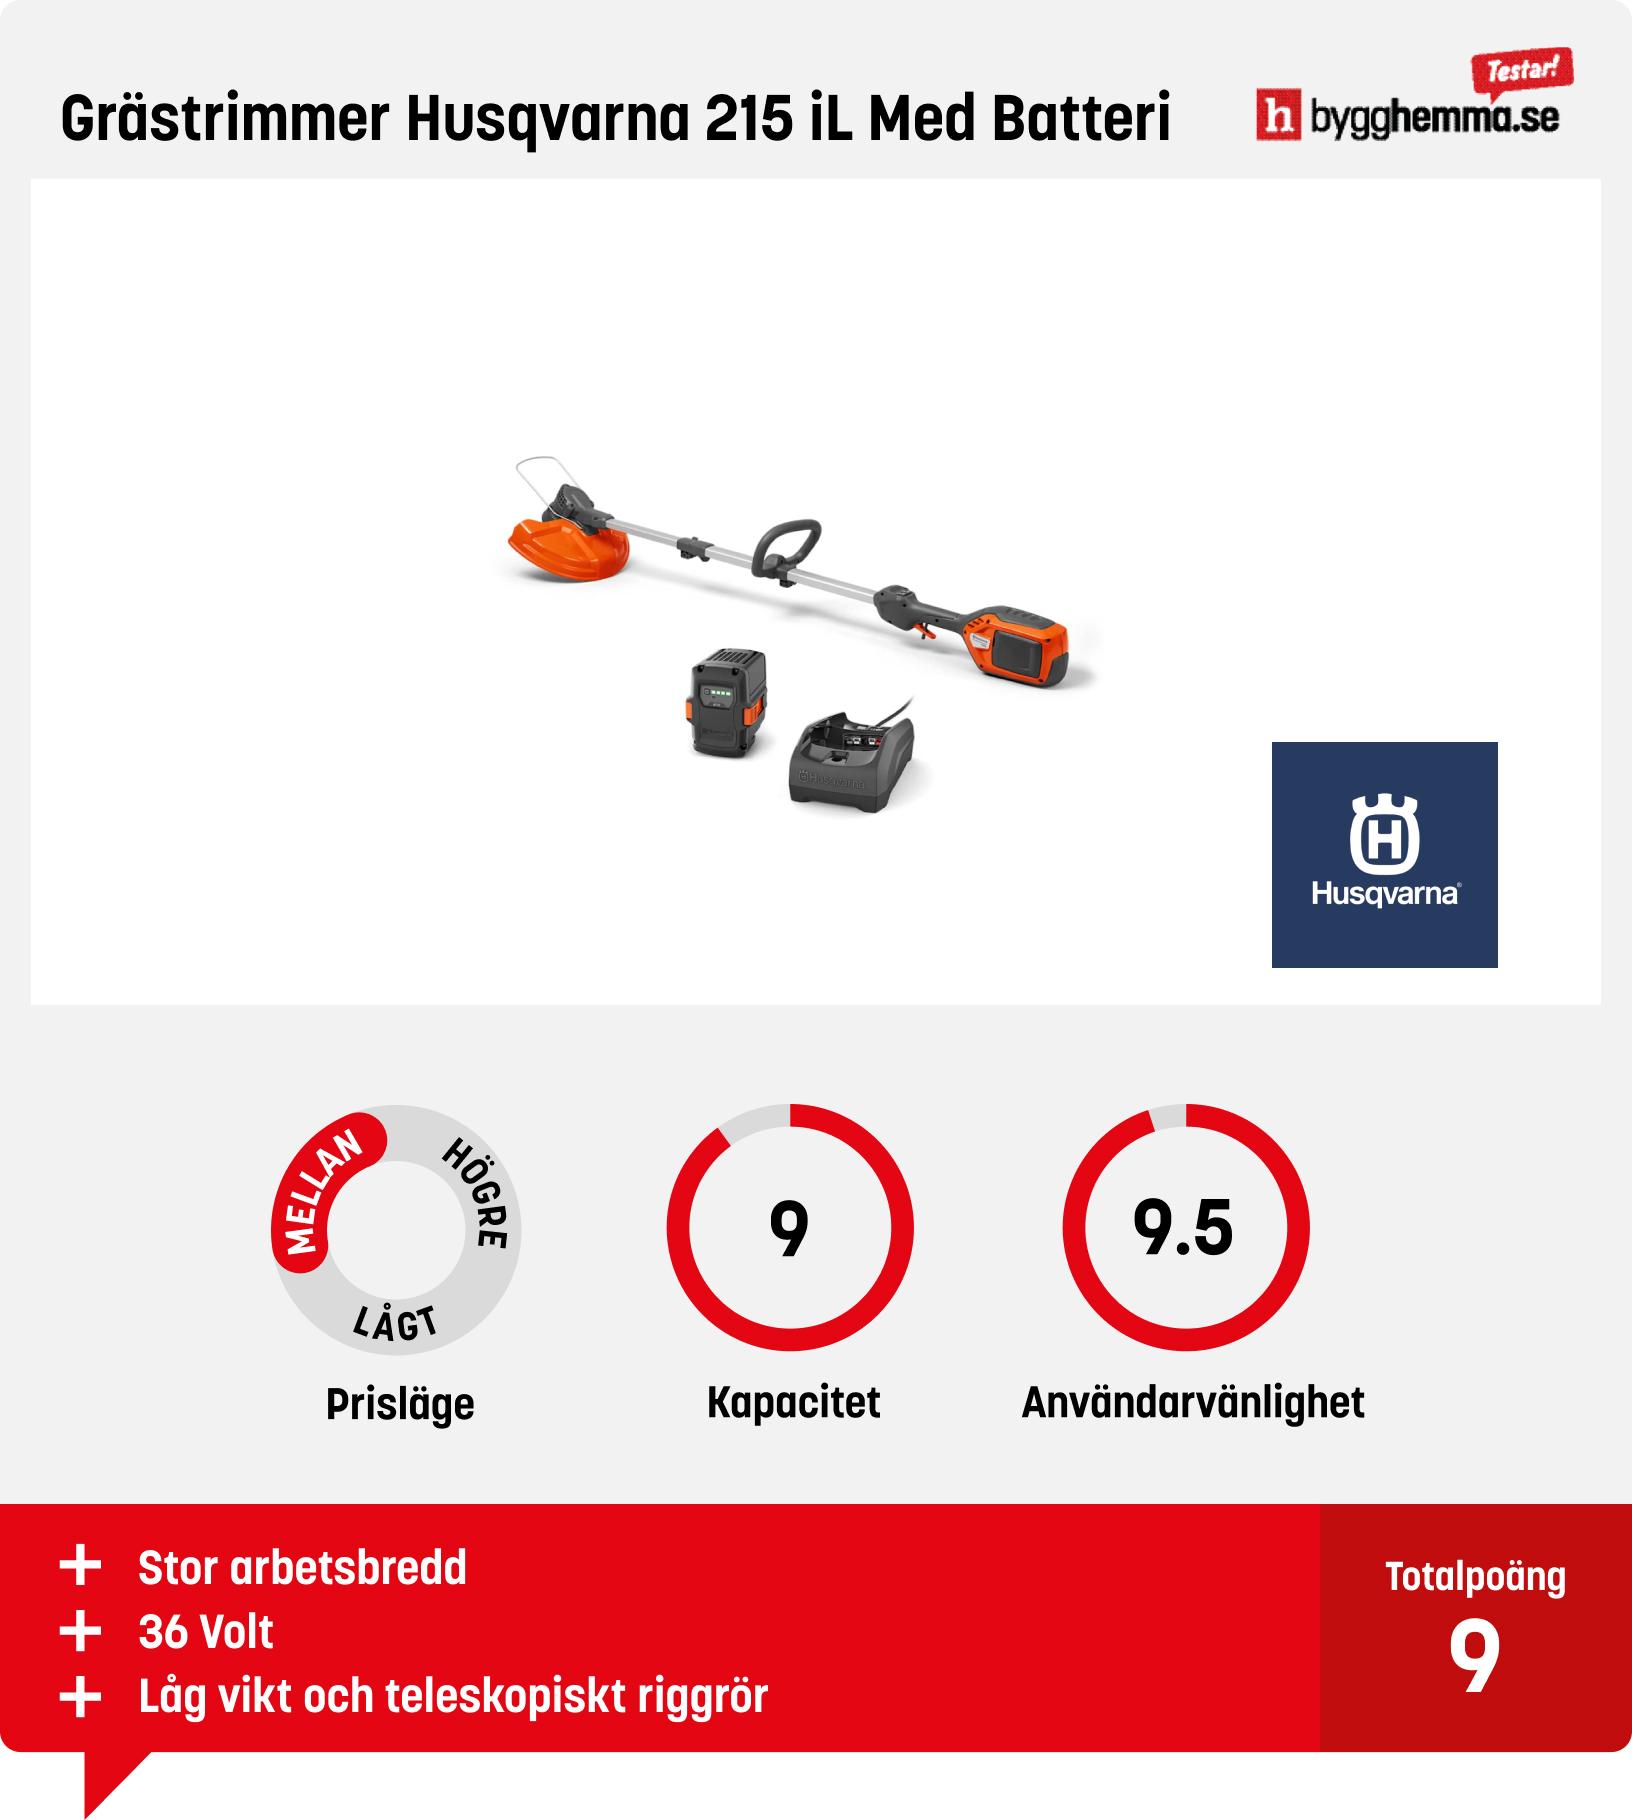 Grästrimmer batteri bäst i test - Grästrimmer Husqvarna 215 iL Med Batteri